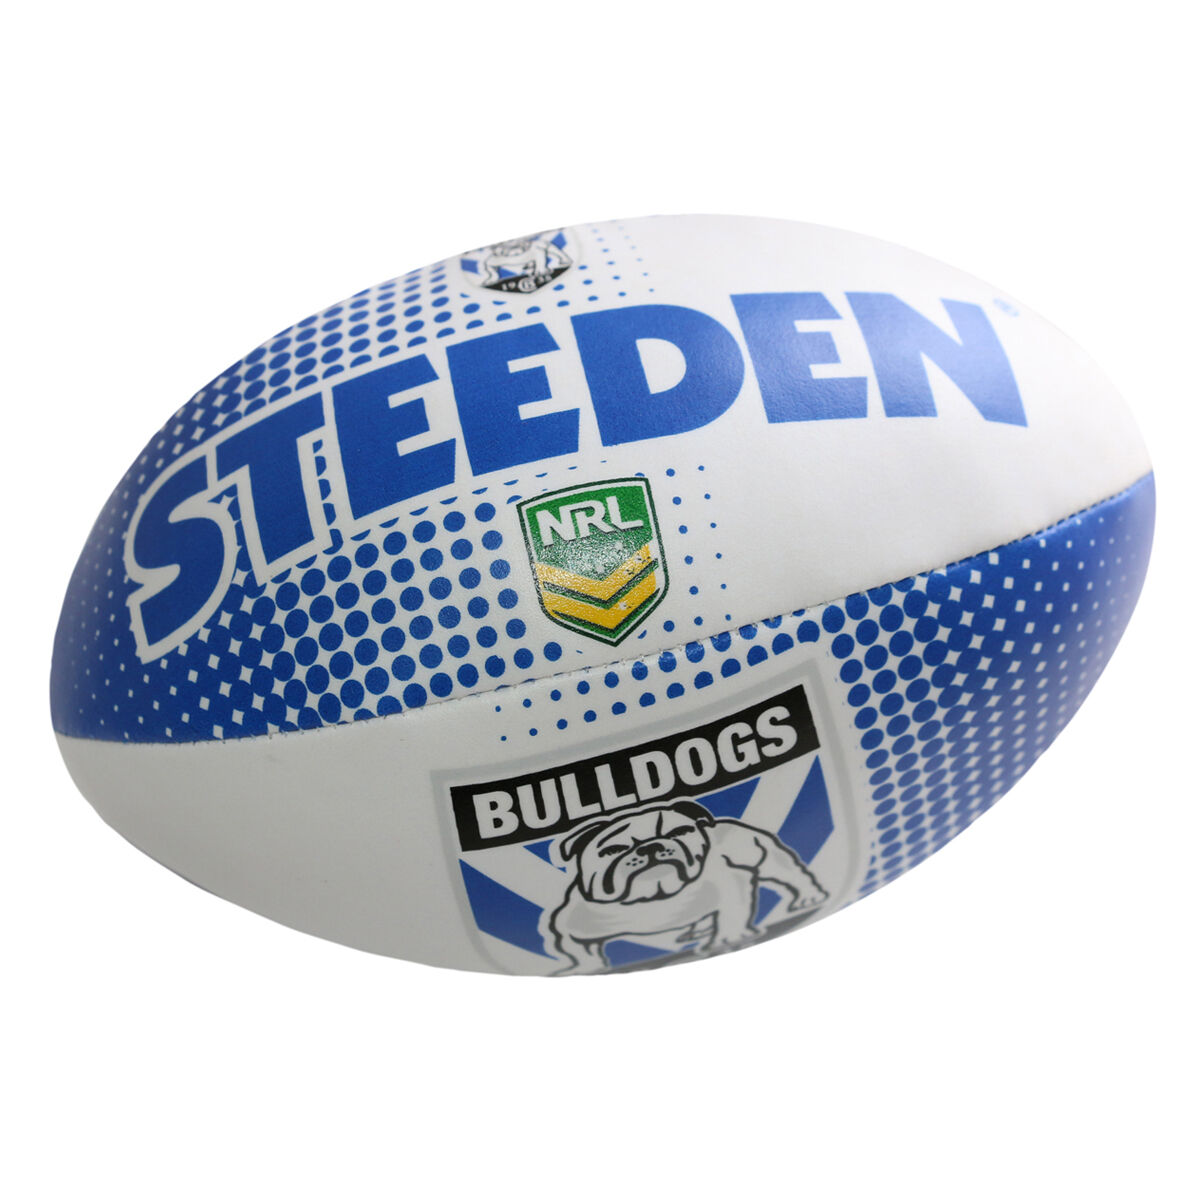 Steeden Canterbury Bankstown Bulldogs NRL White Football Size 5 